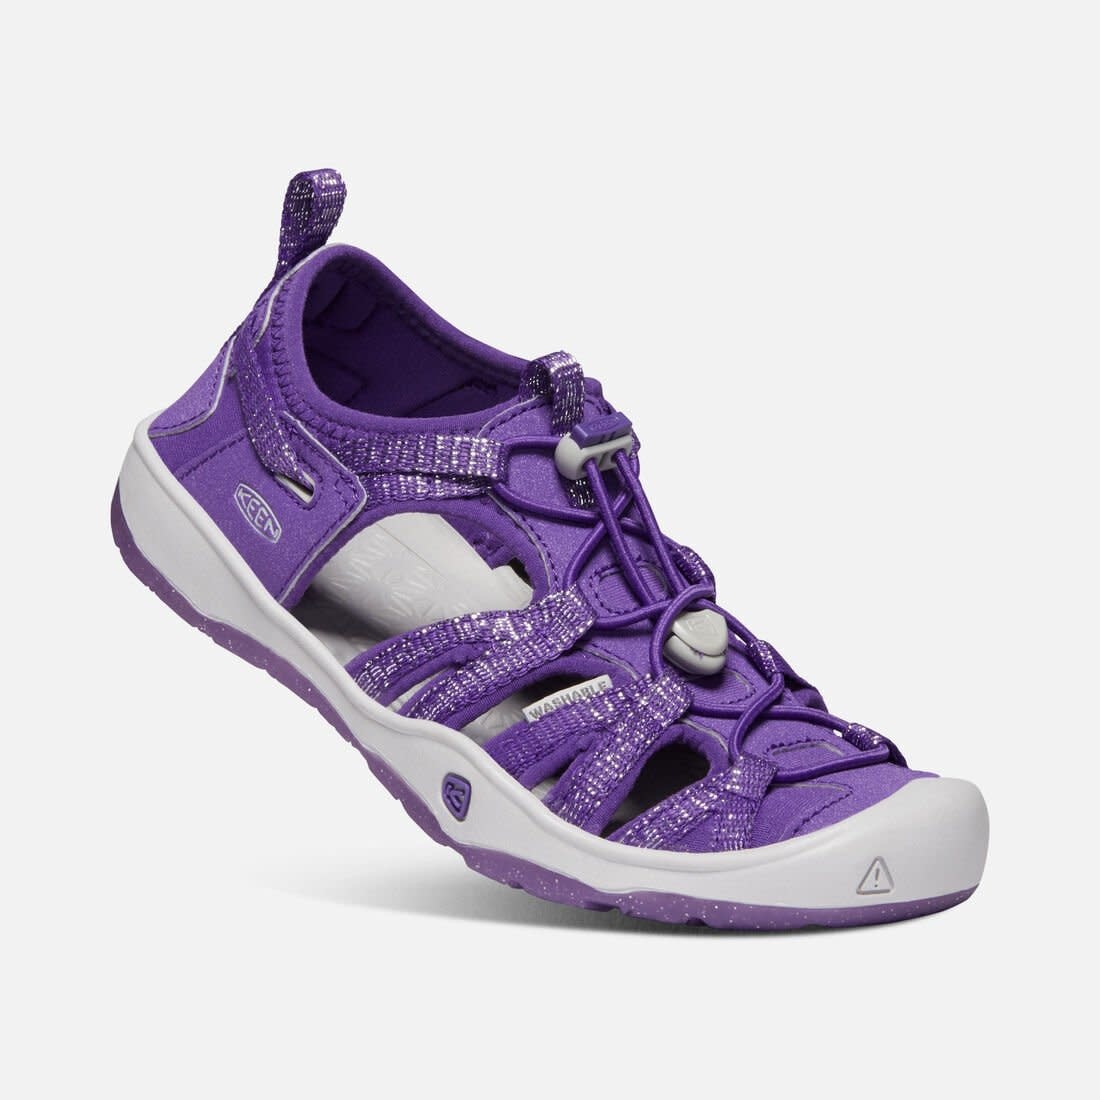 royal purple sneakers